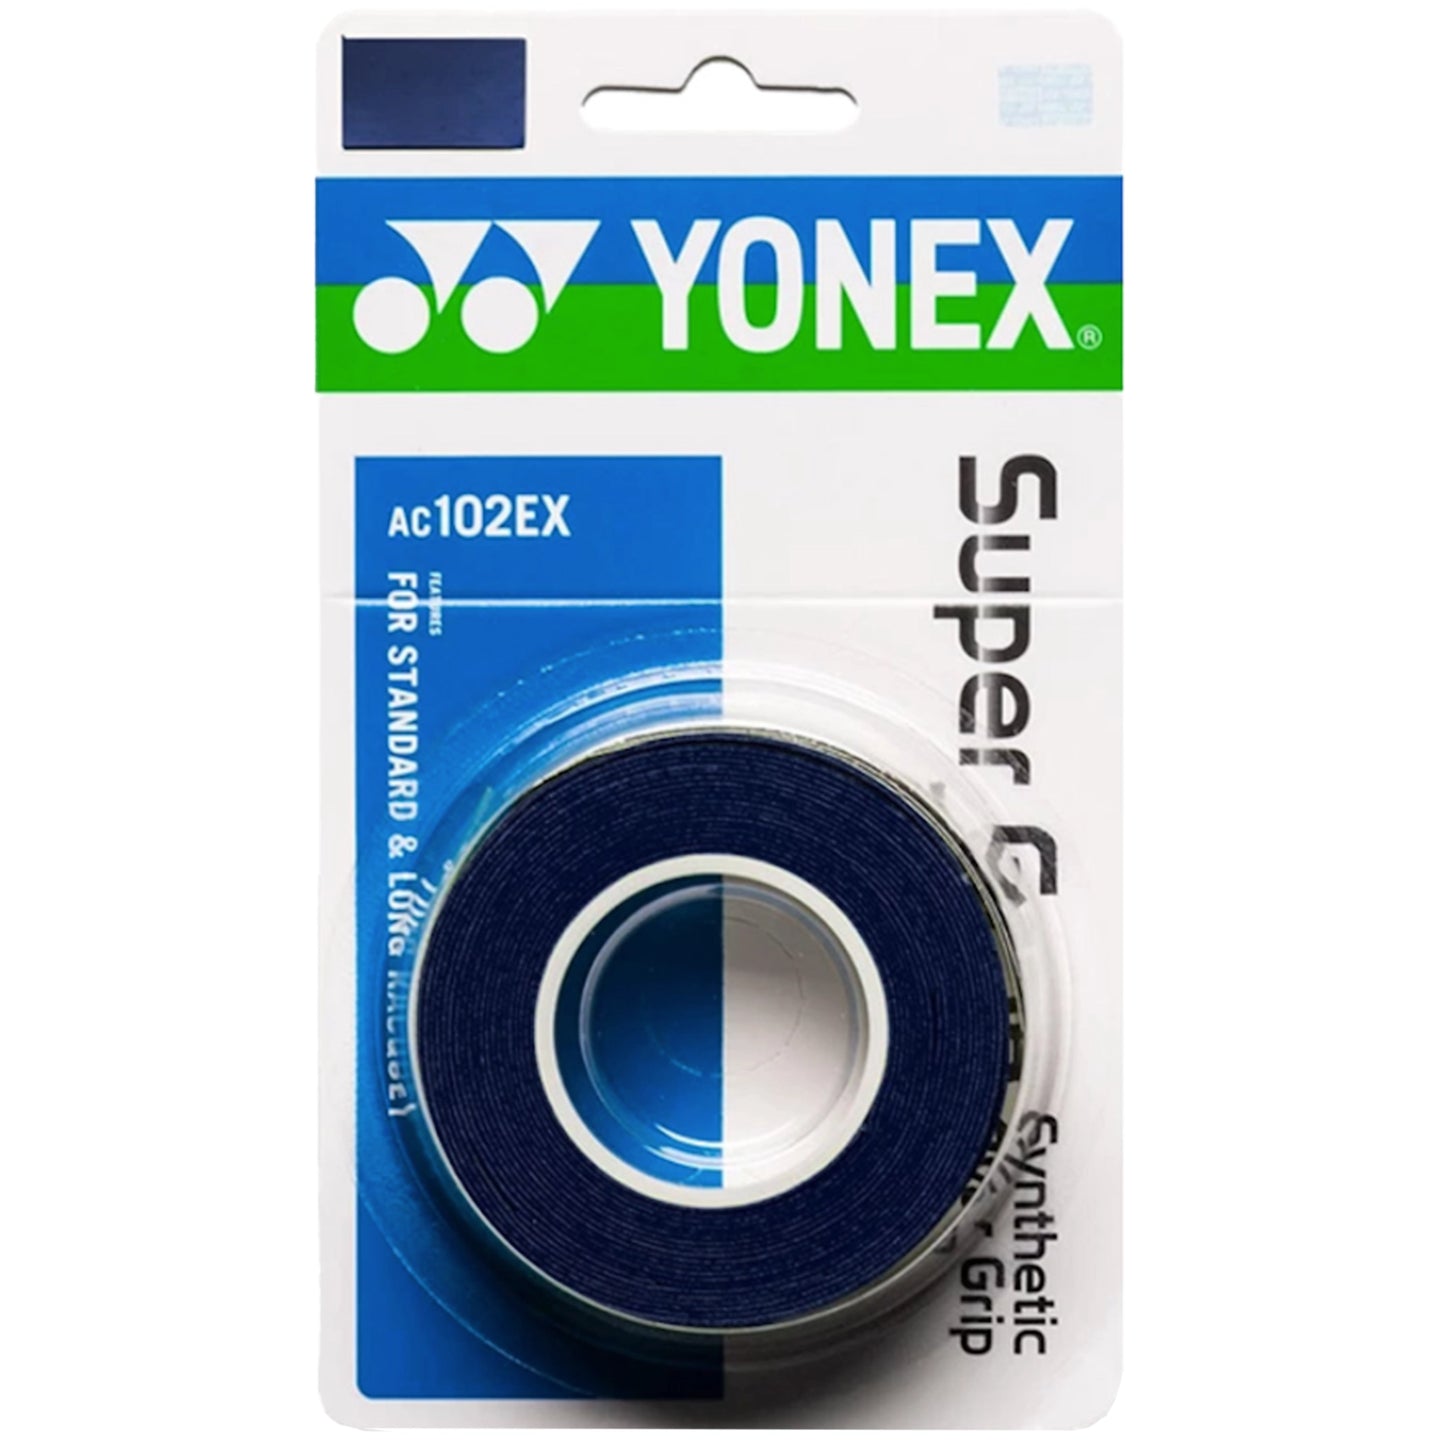 Yonex overgrip Wet Super Grap (3) Bleu profond